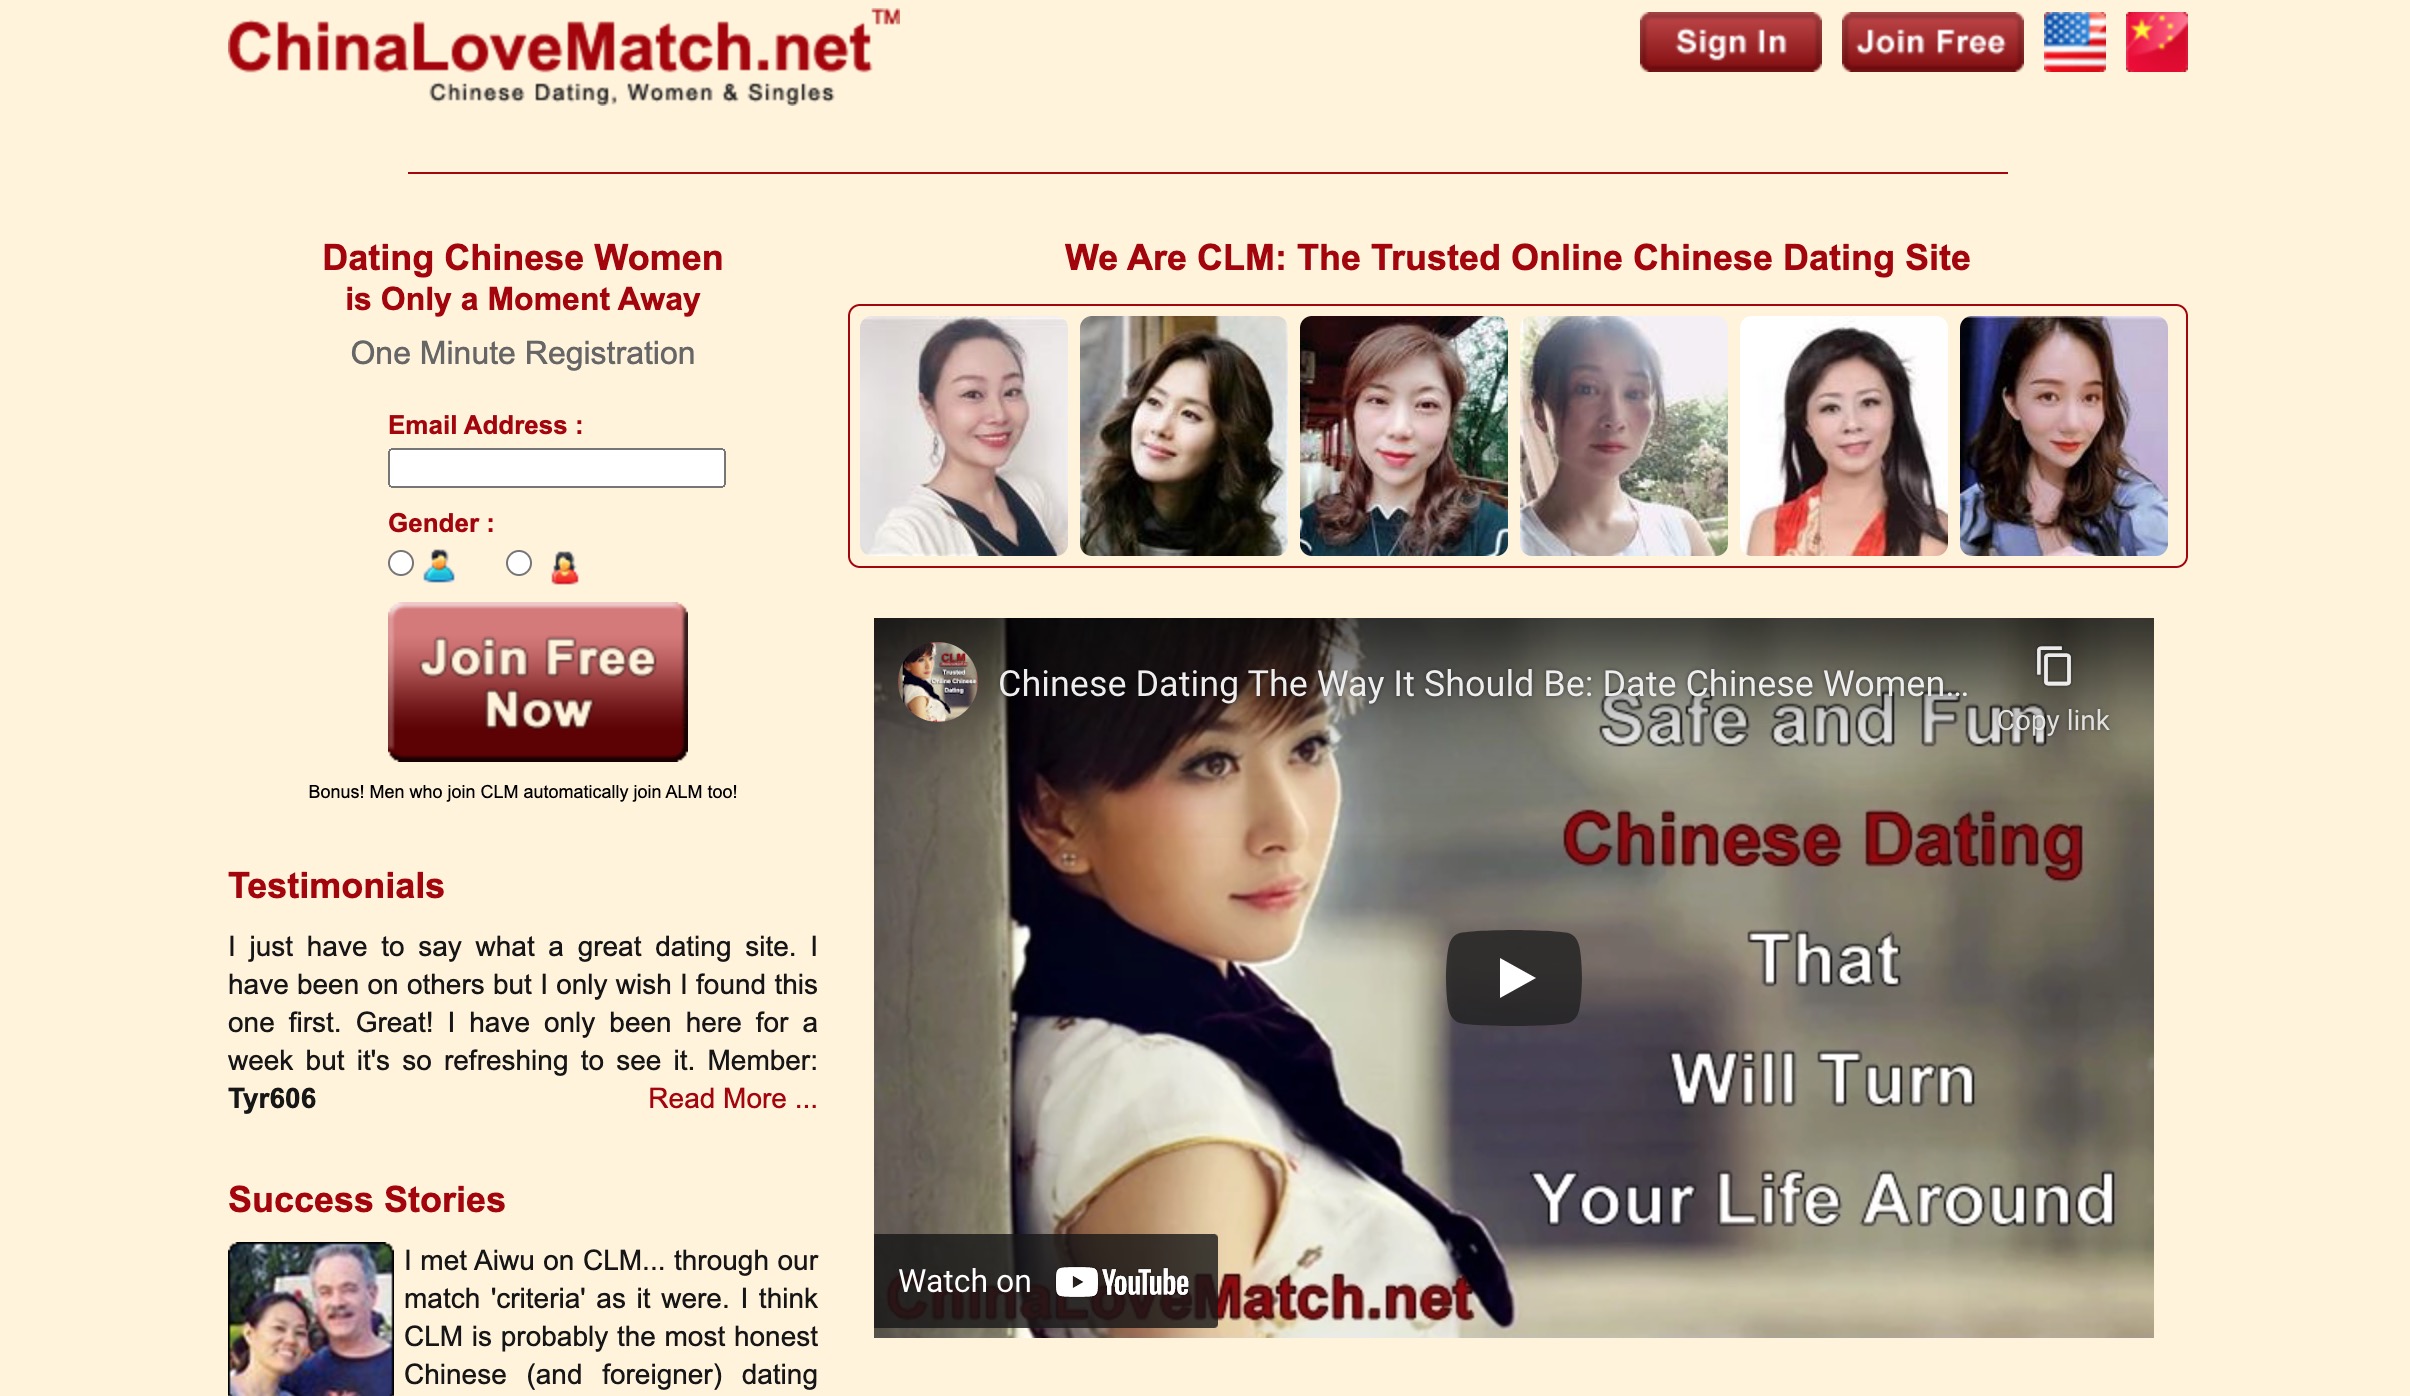 ChinaLoveMatch main page